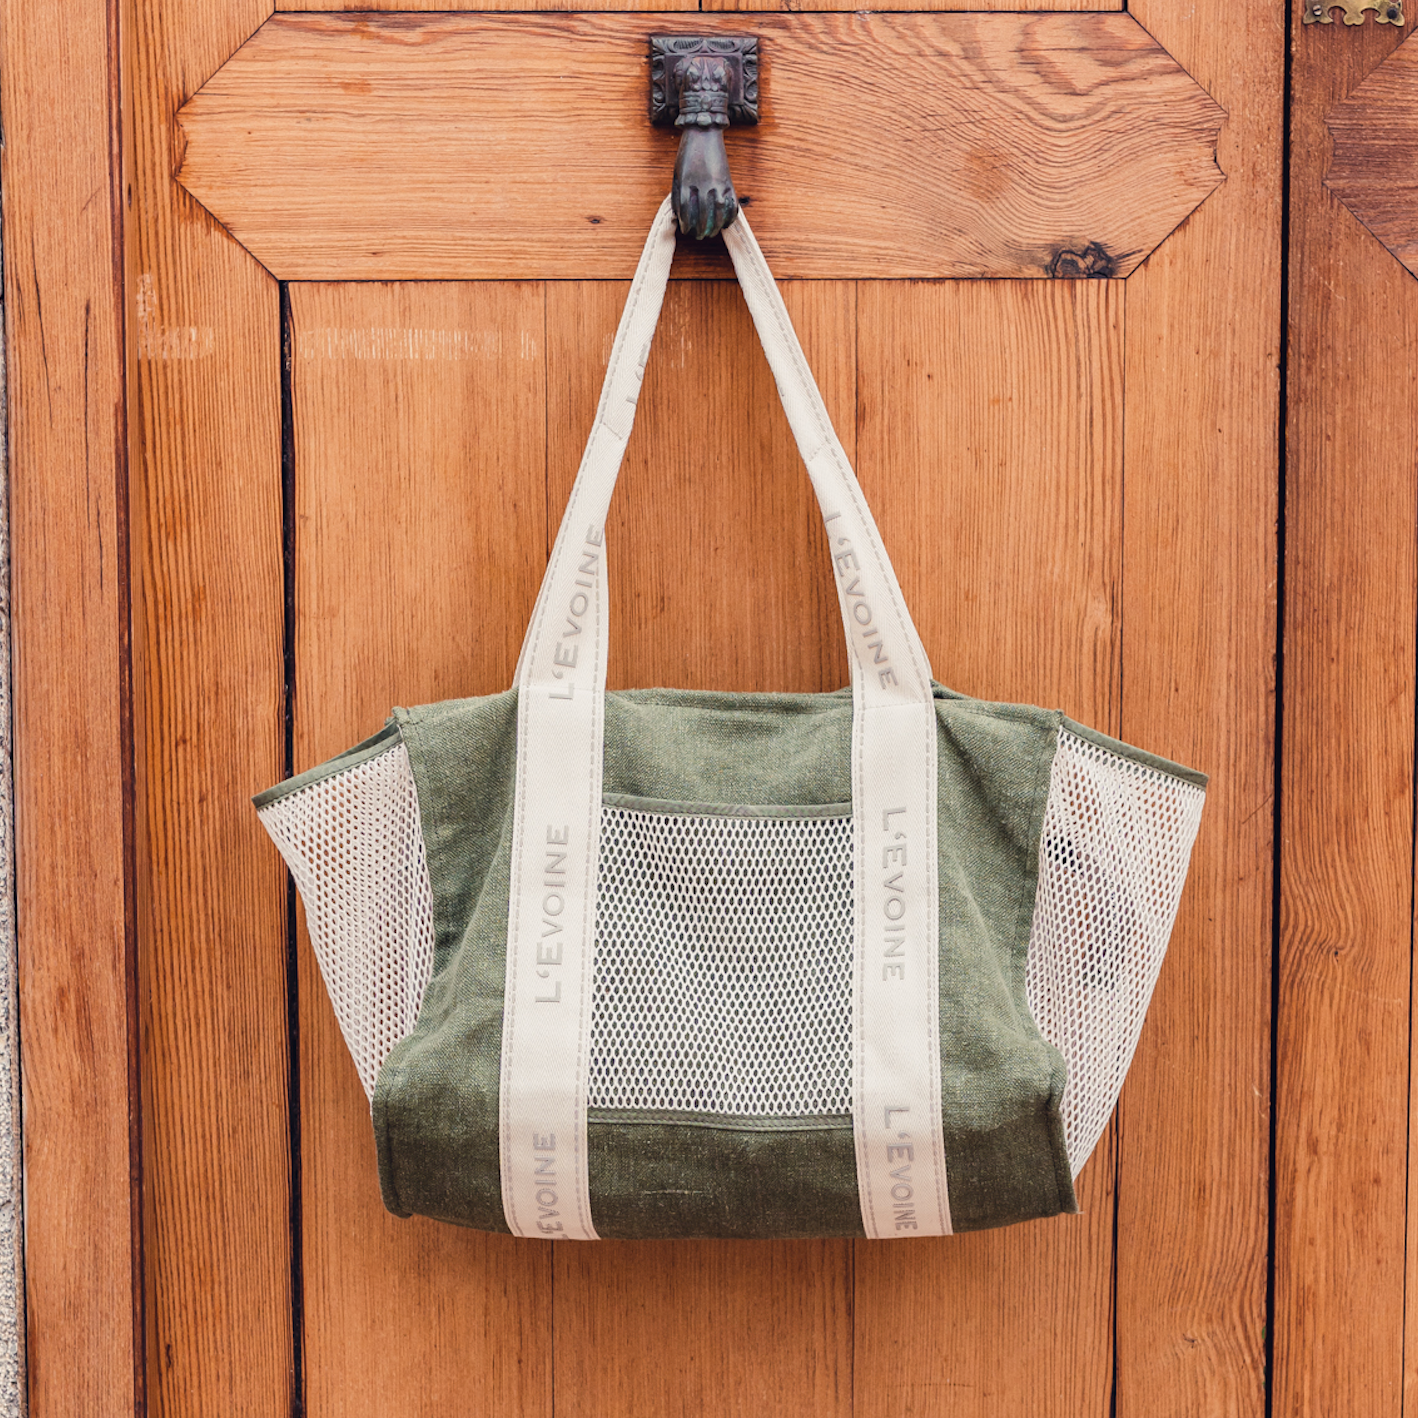 Grooming Bag, Putztasche aus Hanf und Baumwolle in grün